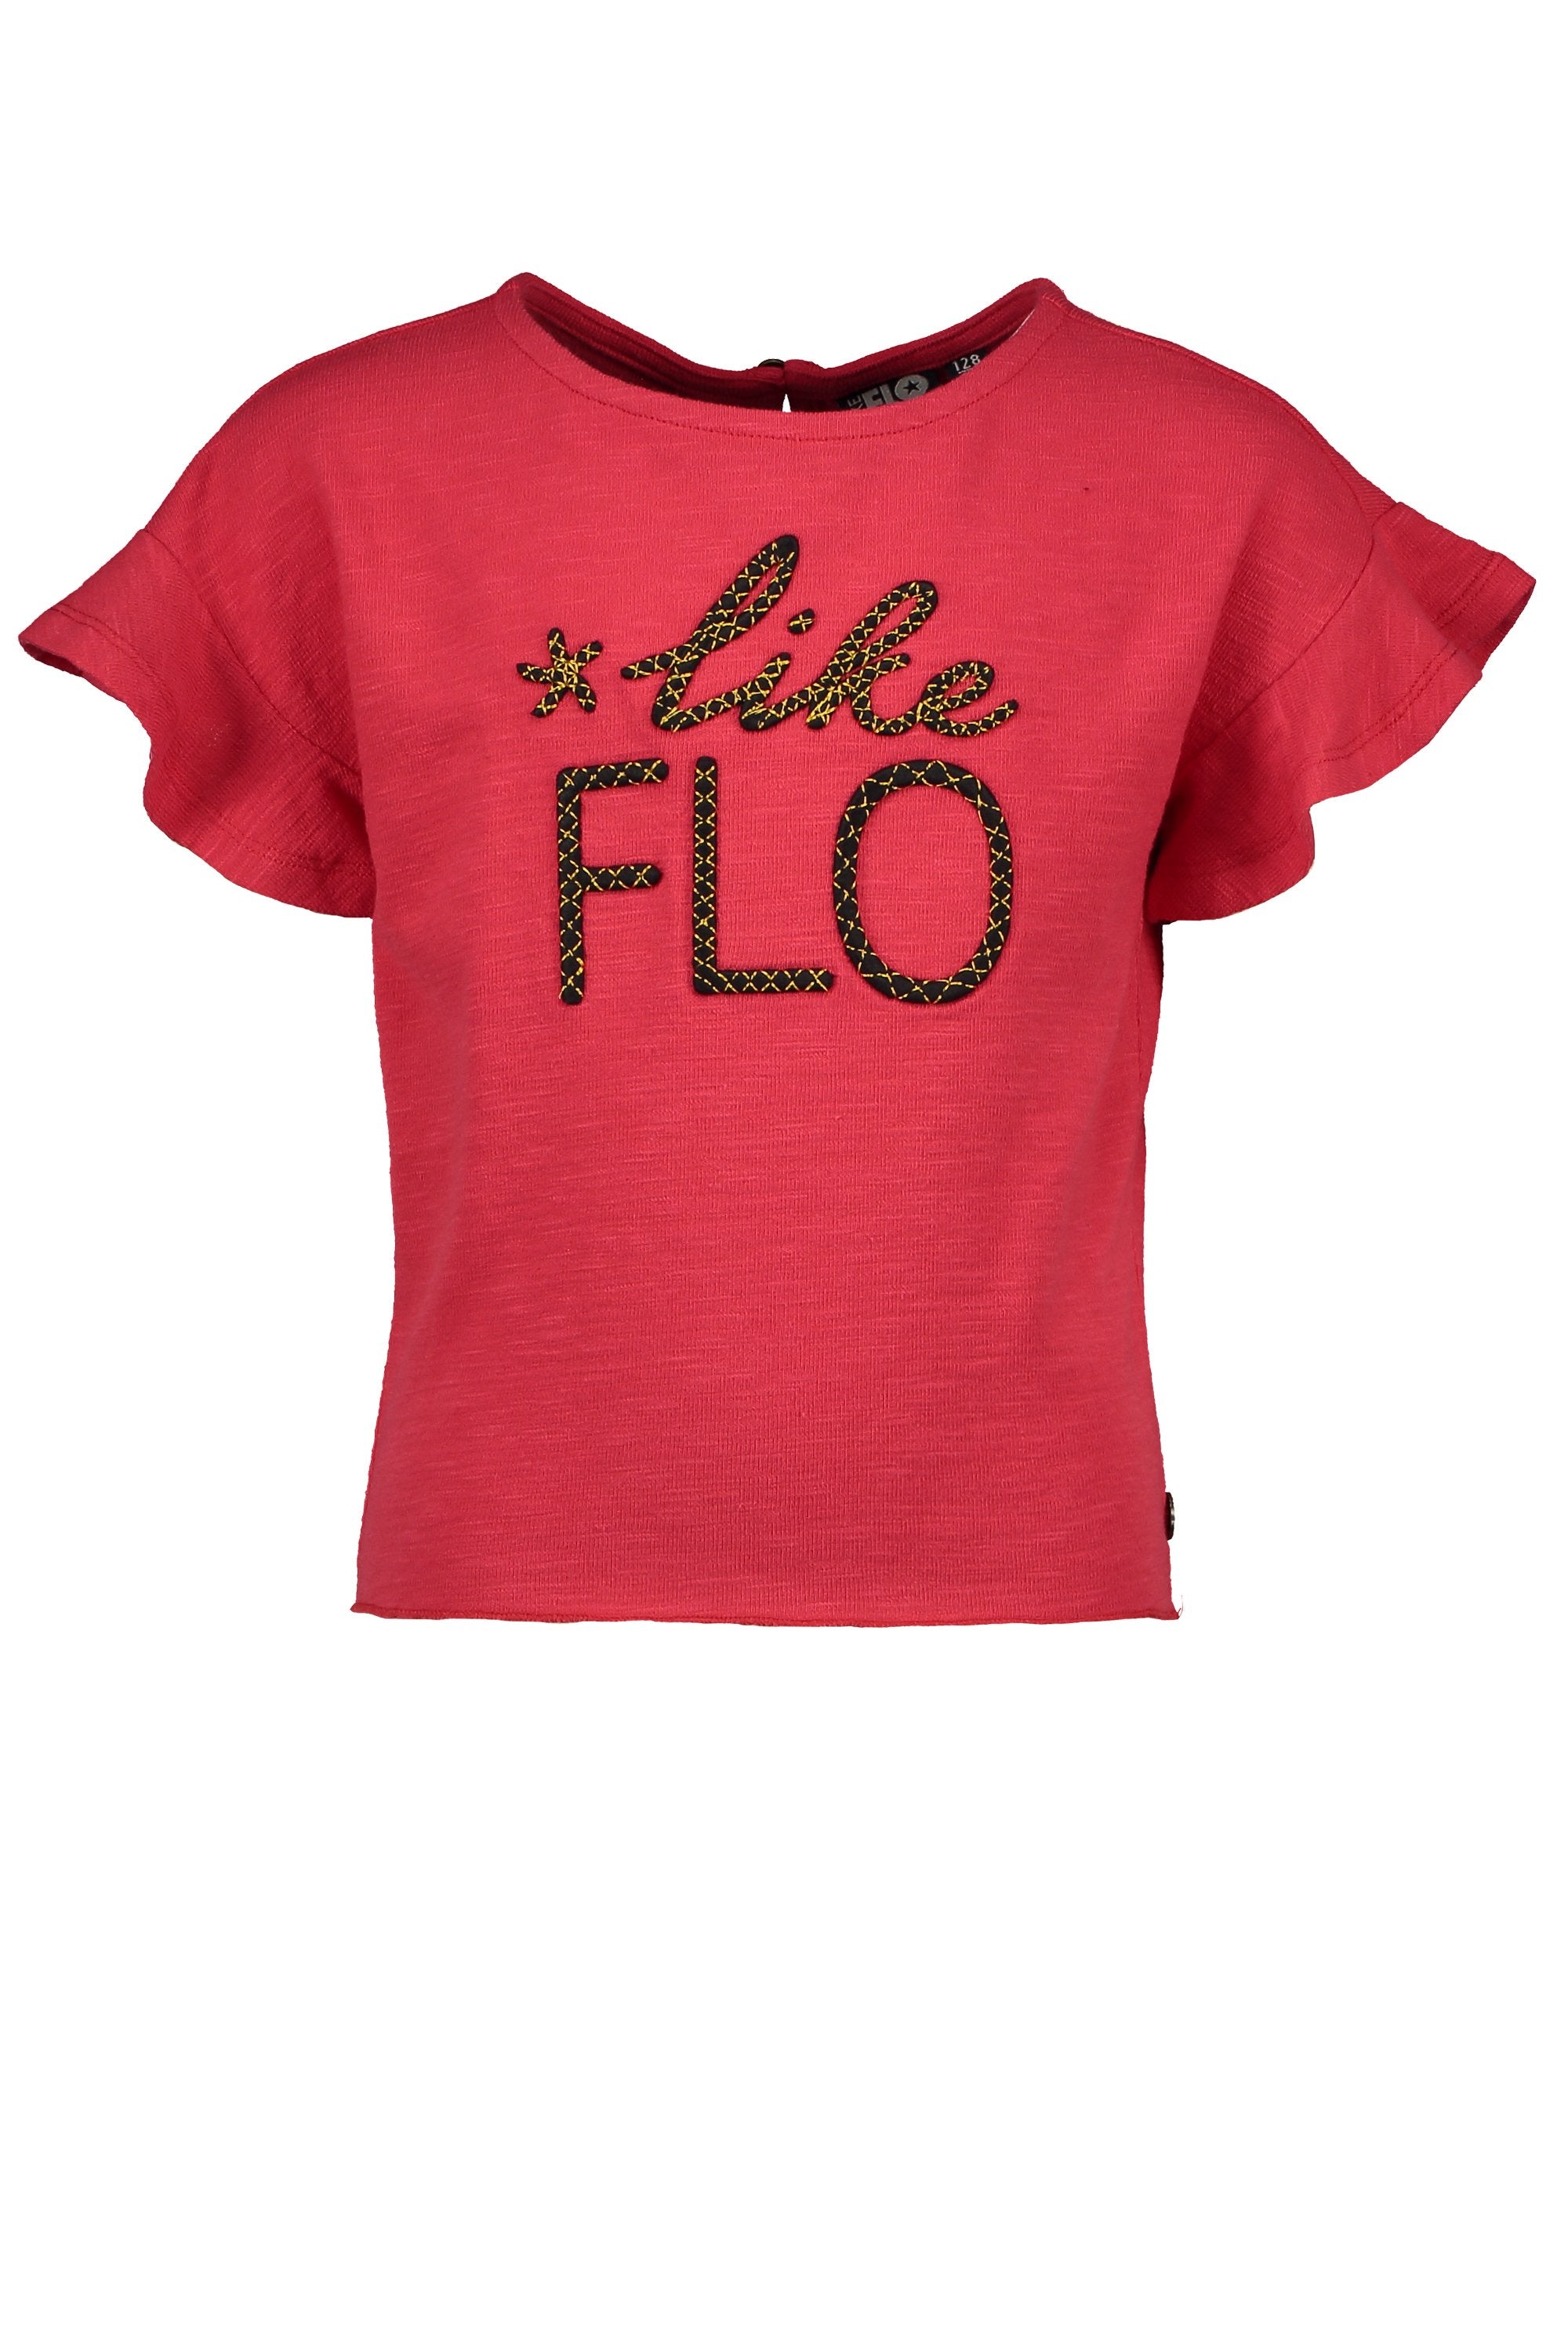 Meisjes Flo girls slub jersey ruffle top van Flo in de kleur Cerise in maat 152.